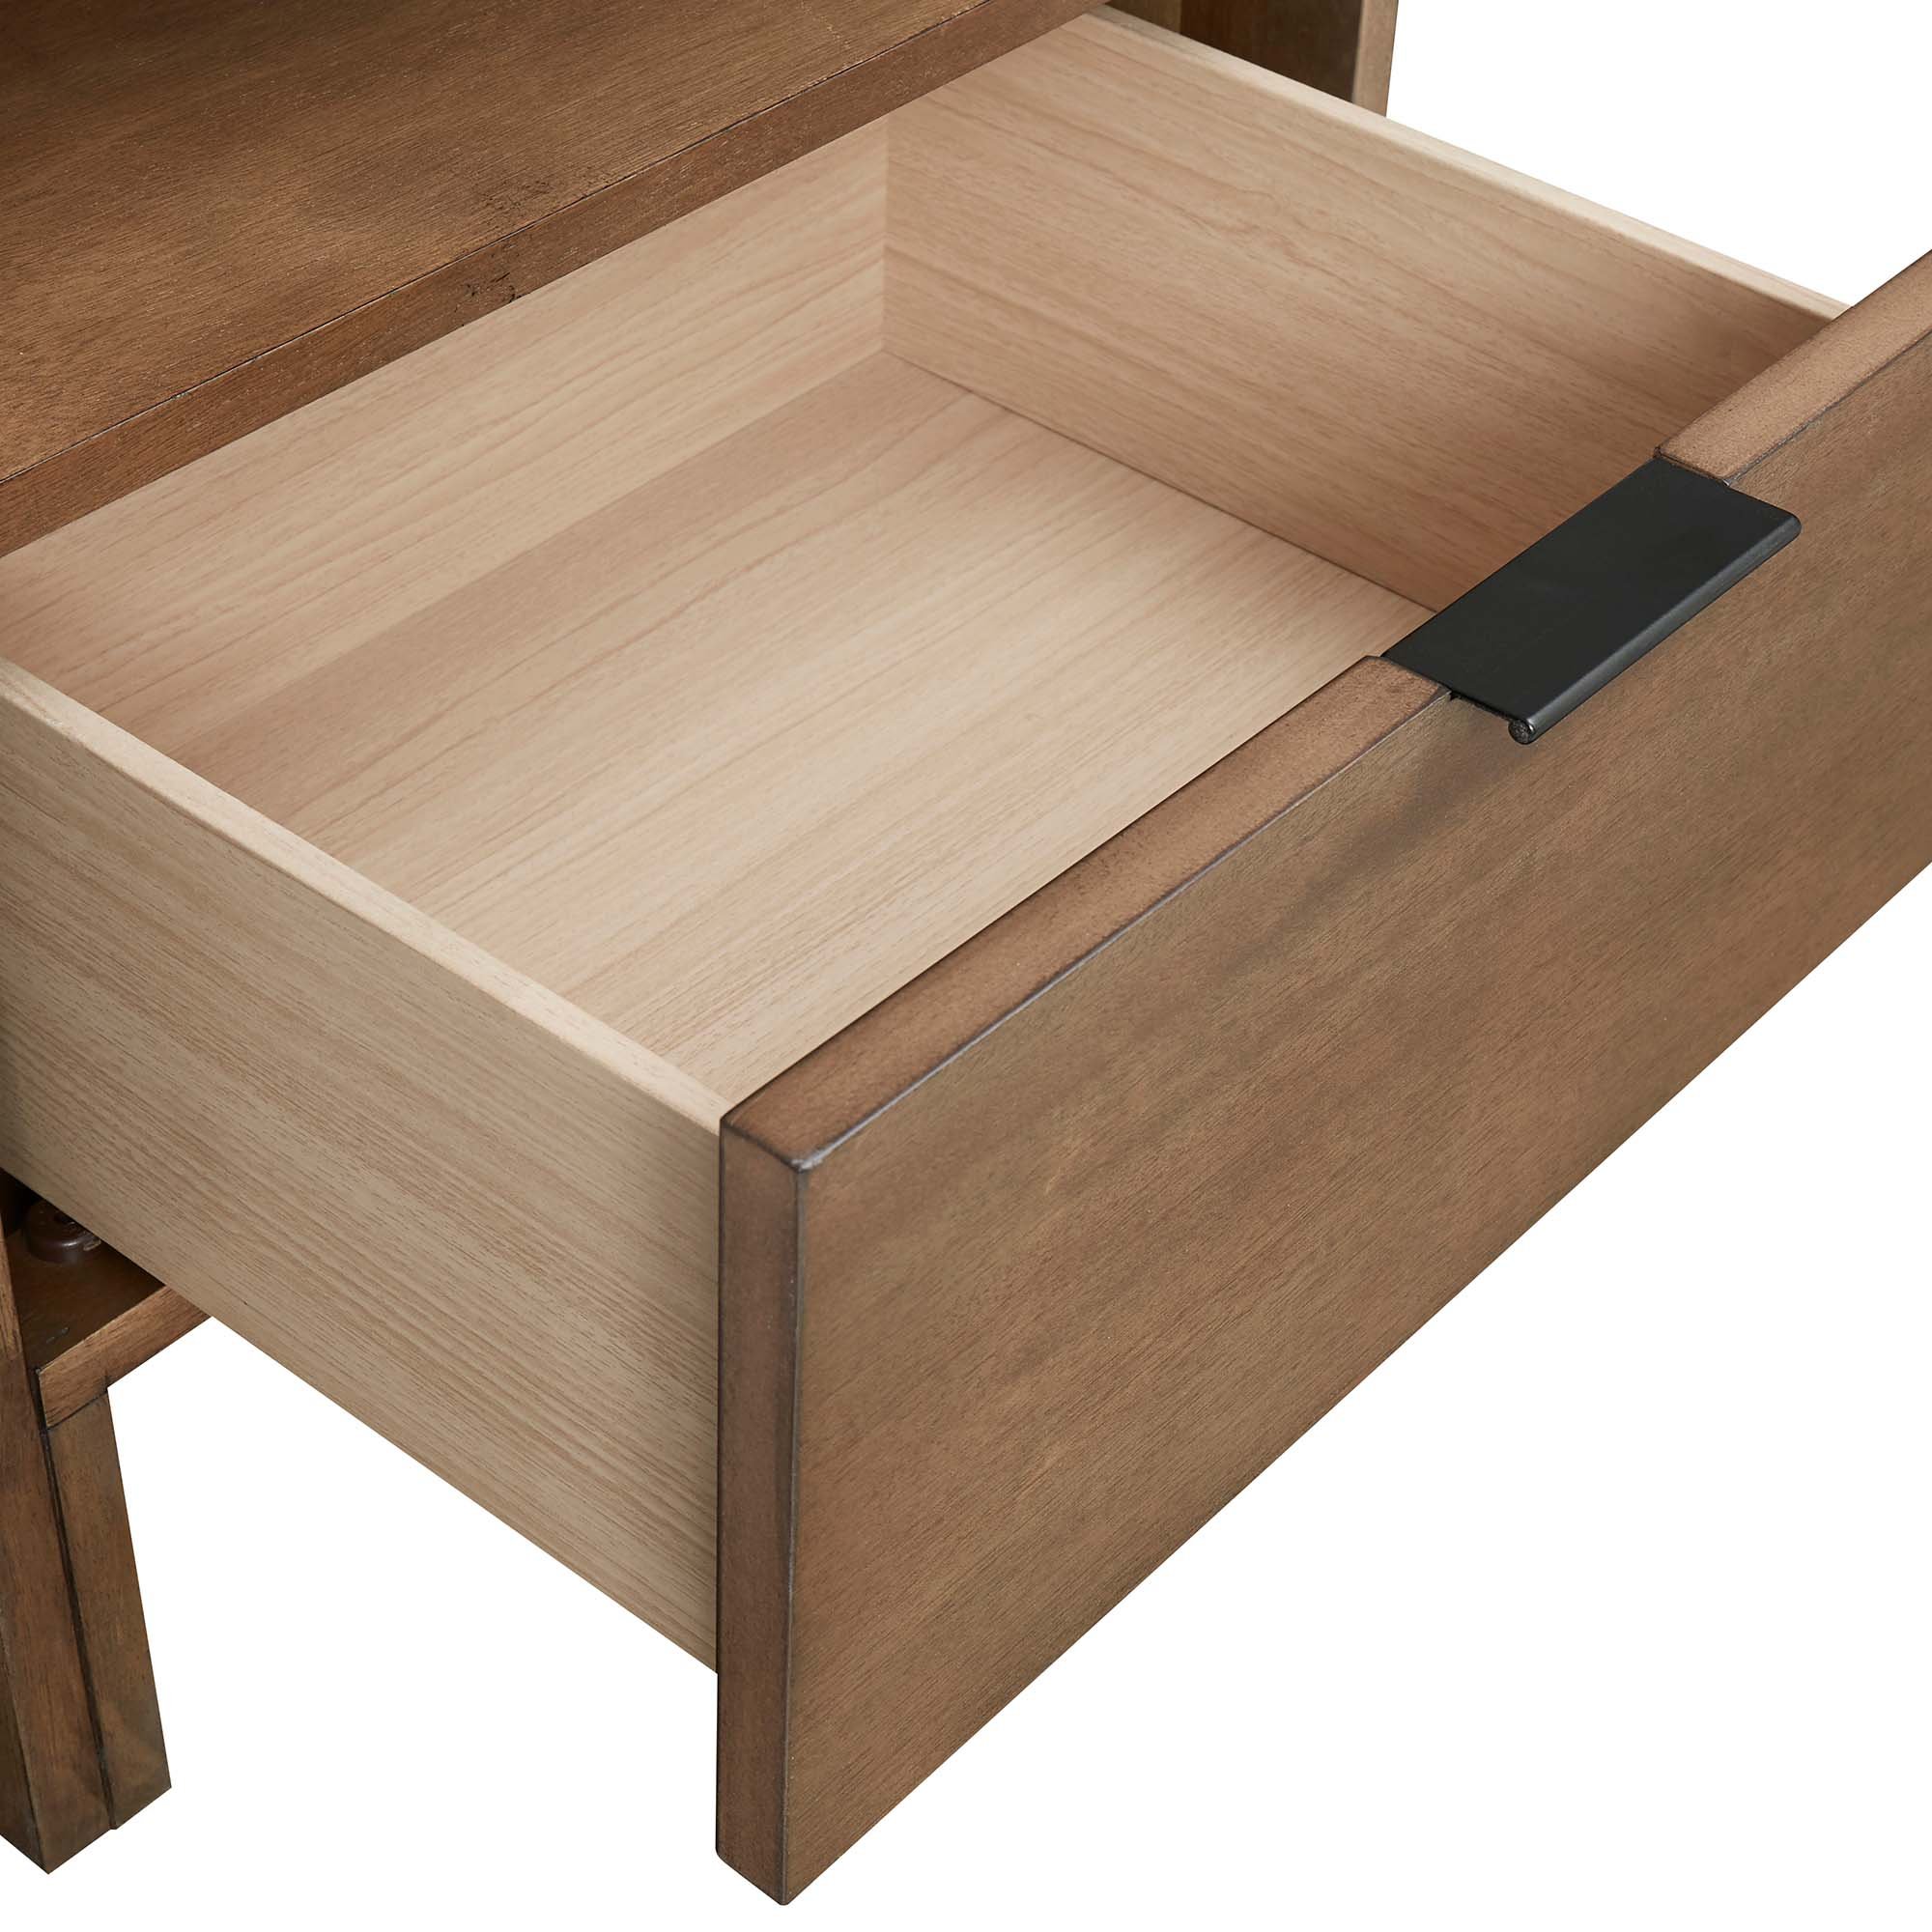 B100-43 drawer detail.jpg